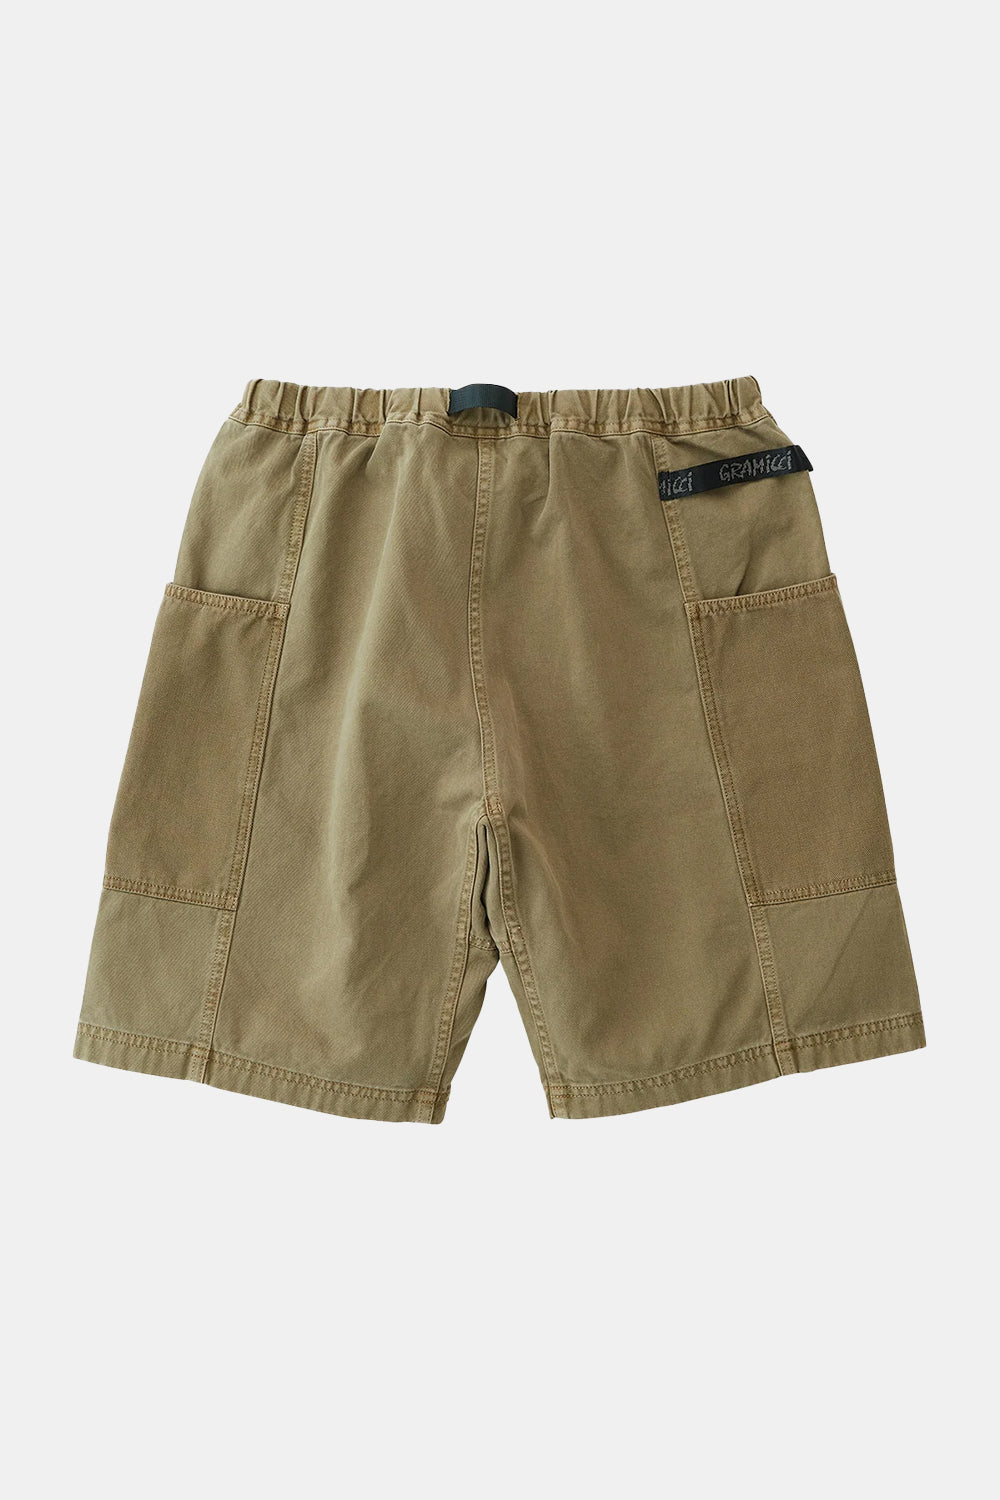 Gramicci Gadget Shorts (mos)